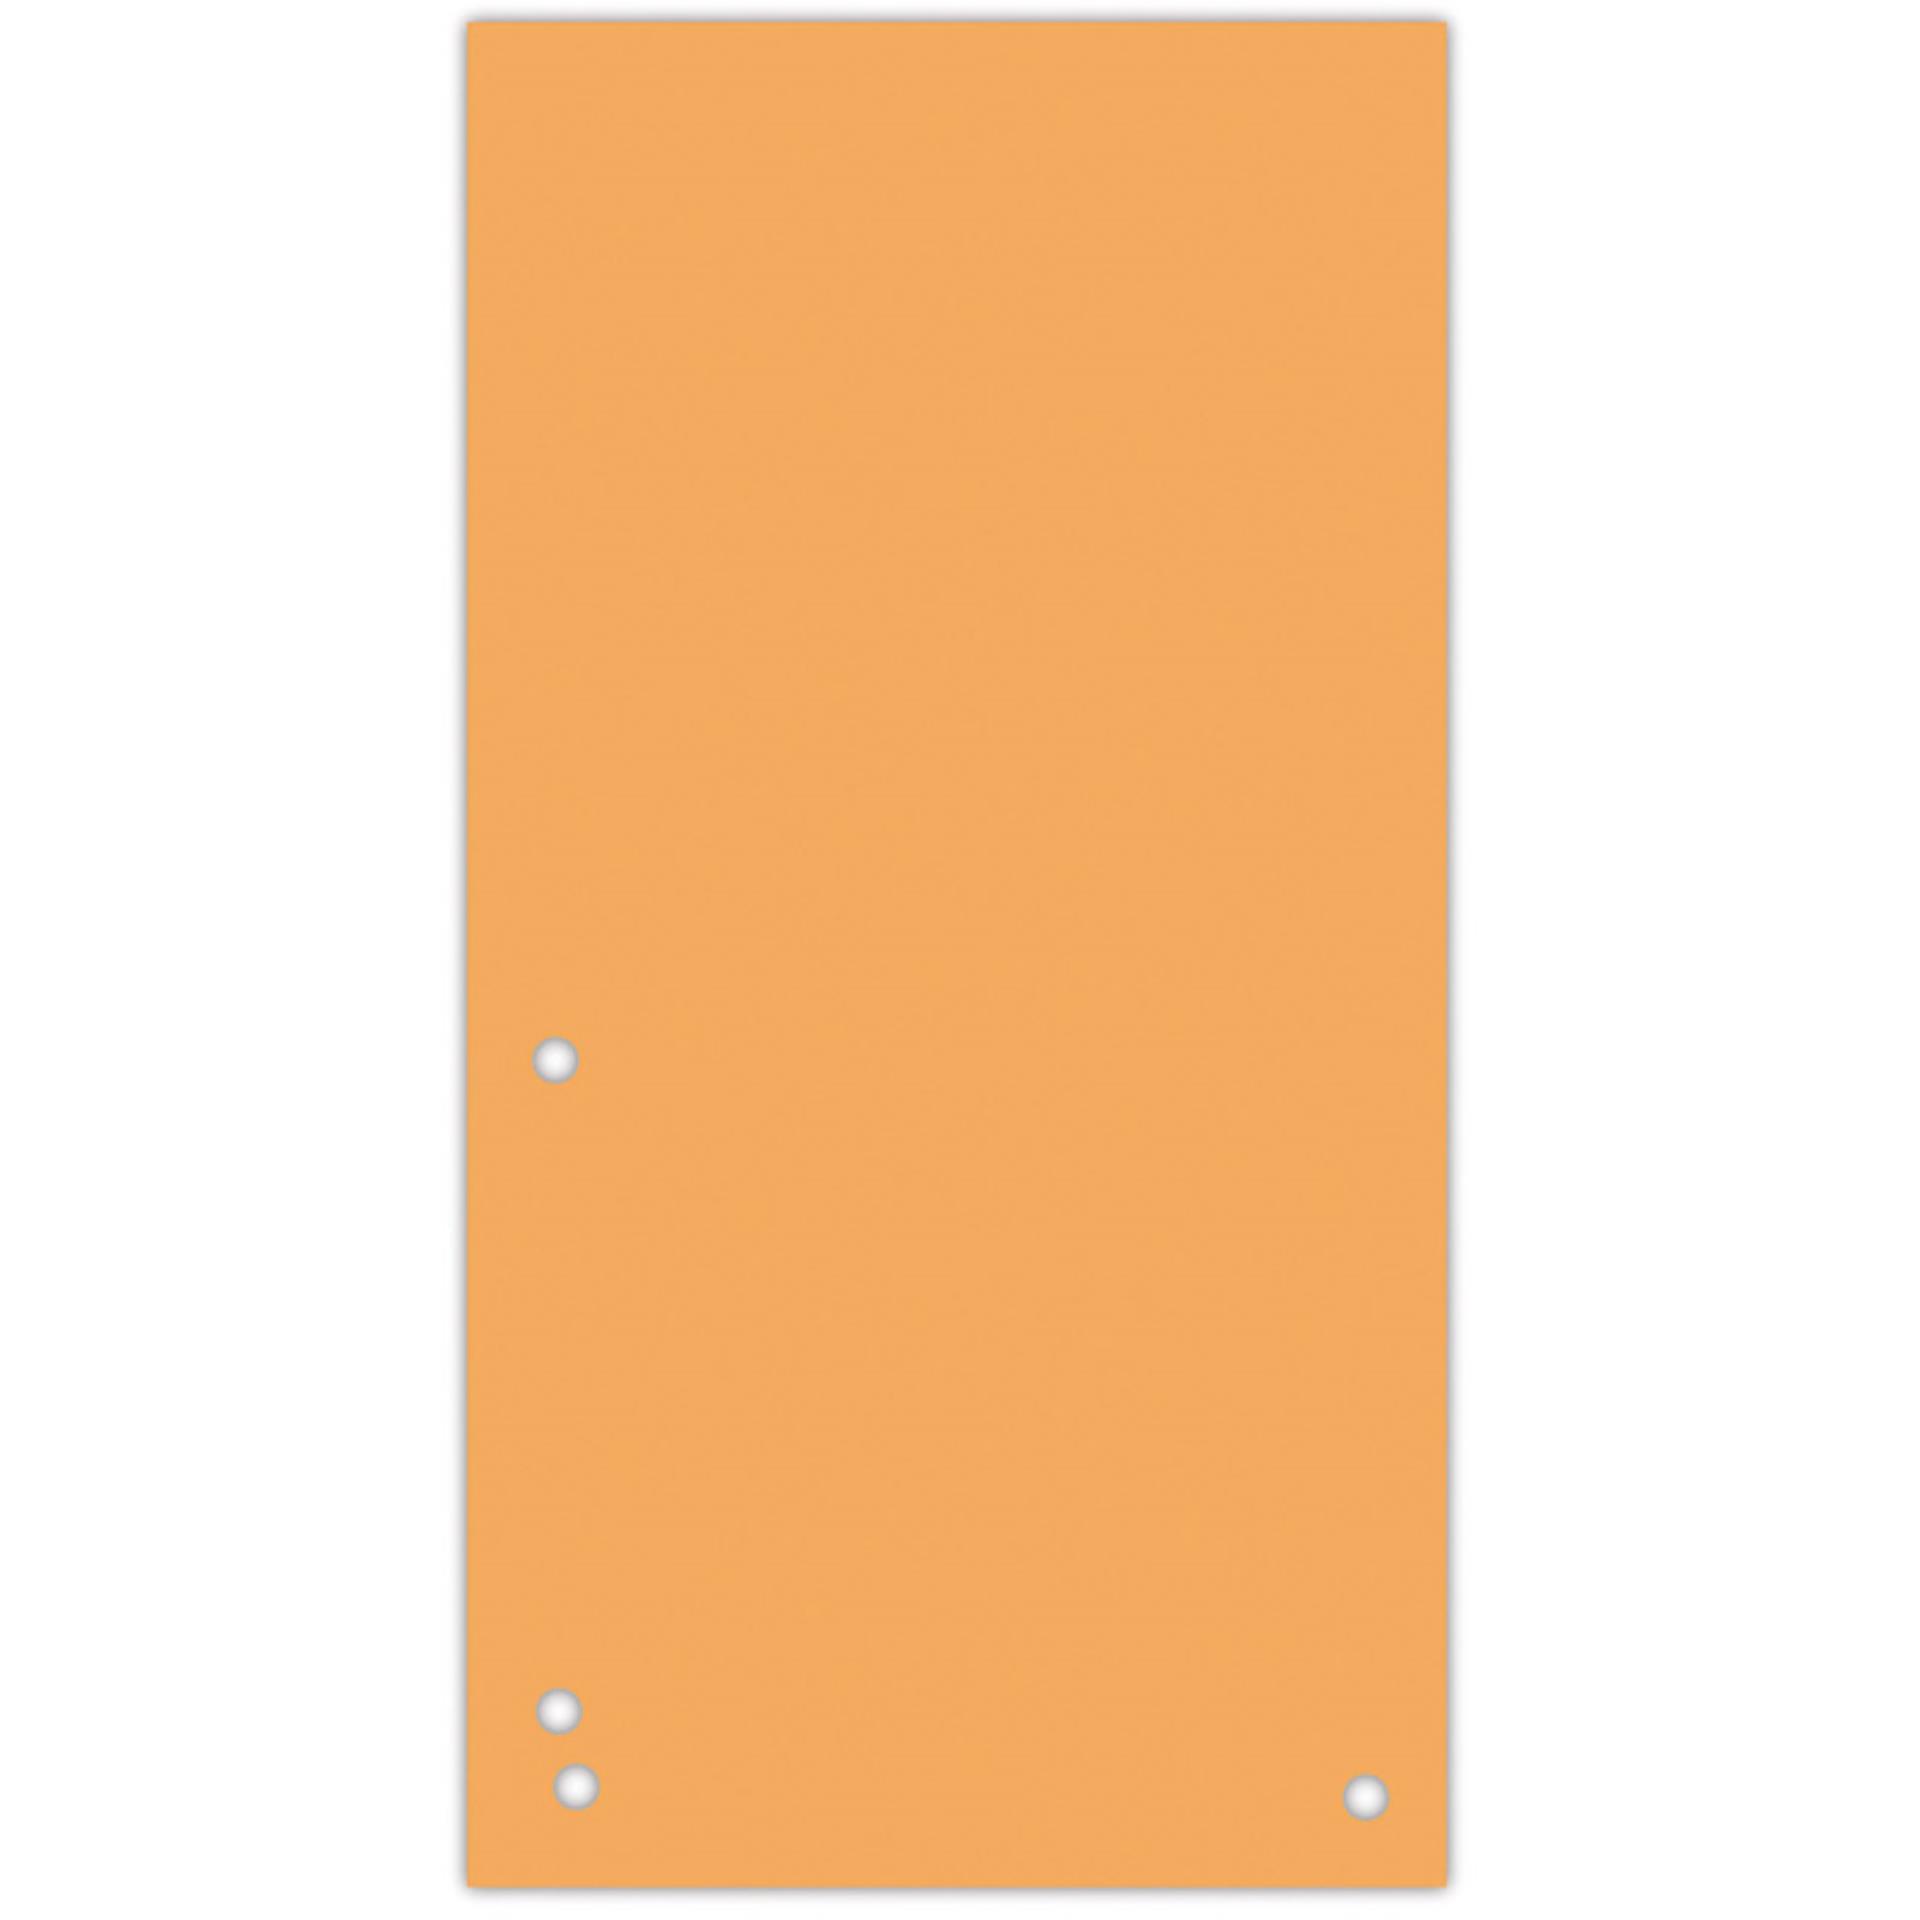 Papírové rozlišovače Donau - 1/3 A4, 235x105 mm, 100 ks, oranžové